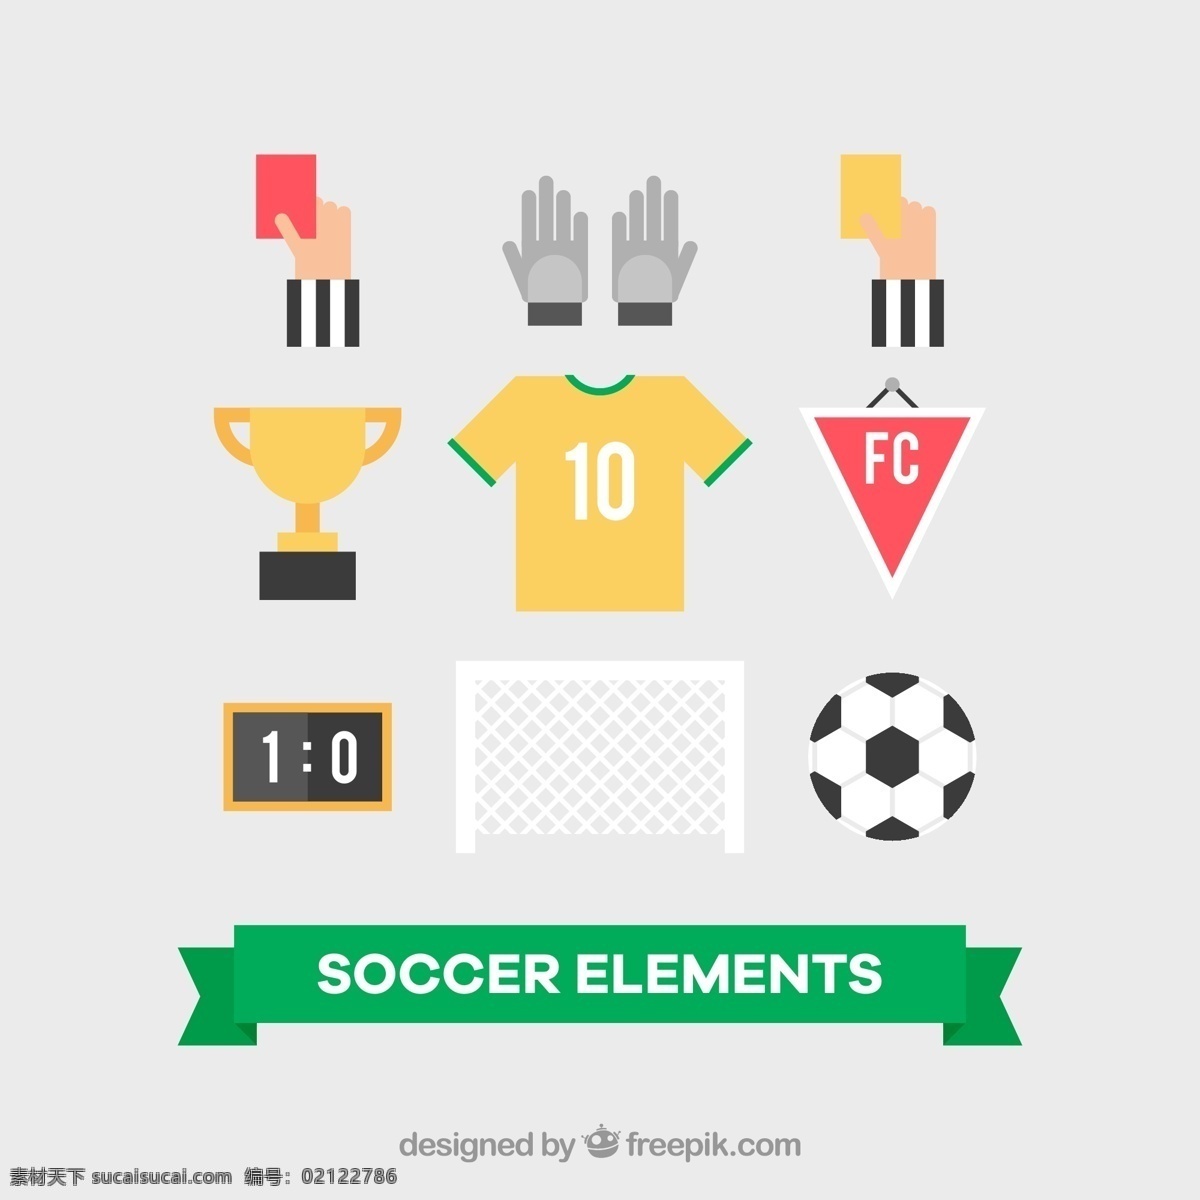 足球物品 足球 物品 奖杯 手套 球衣 计分板 生活百科 体育用品